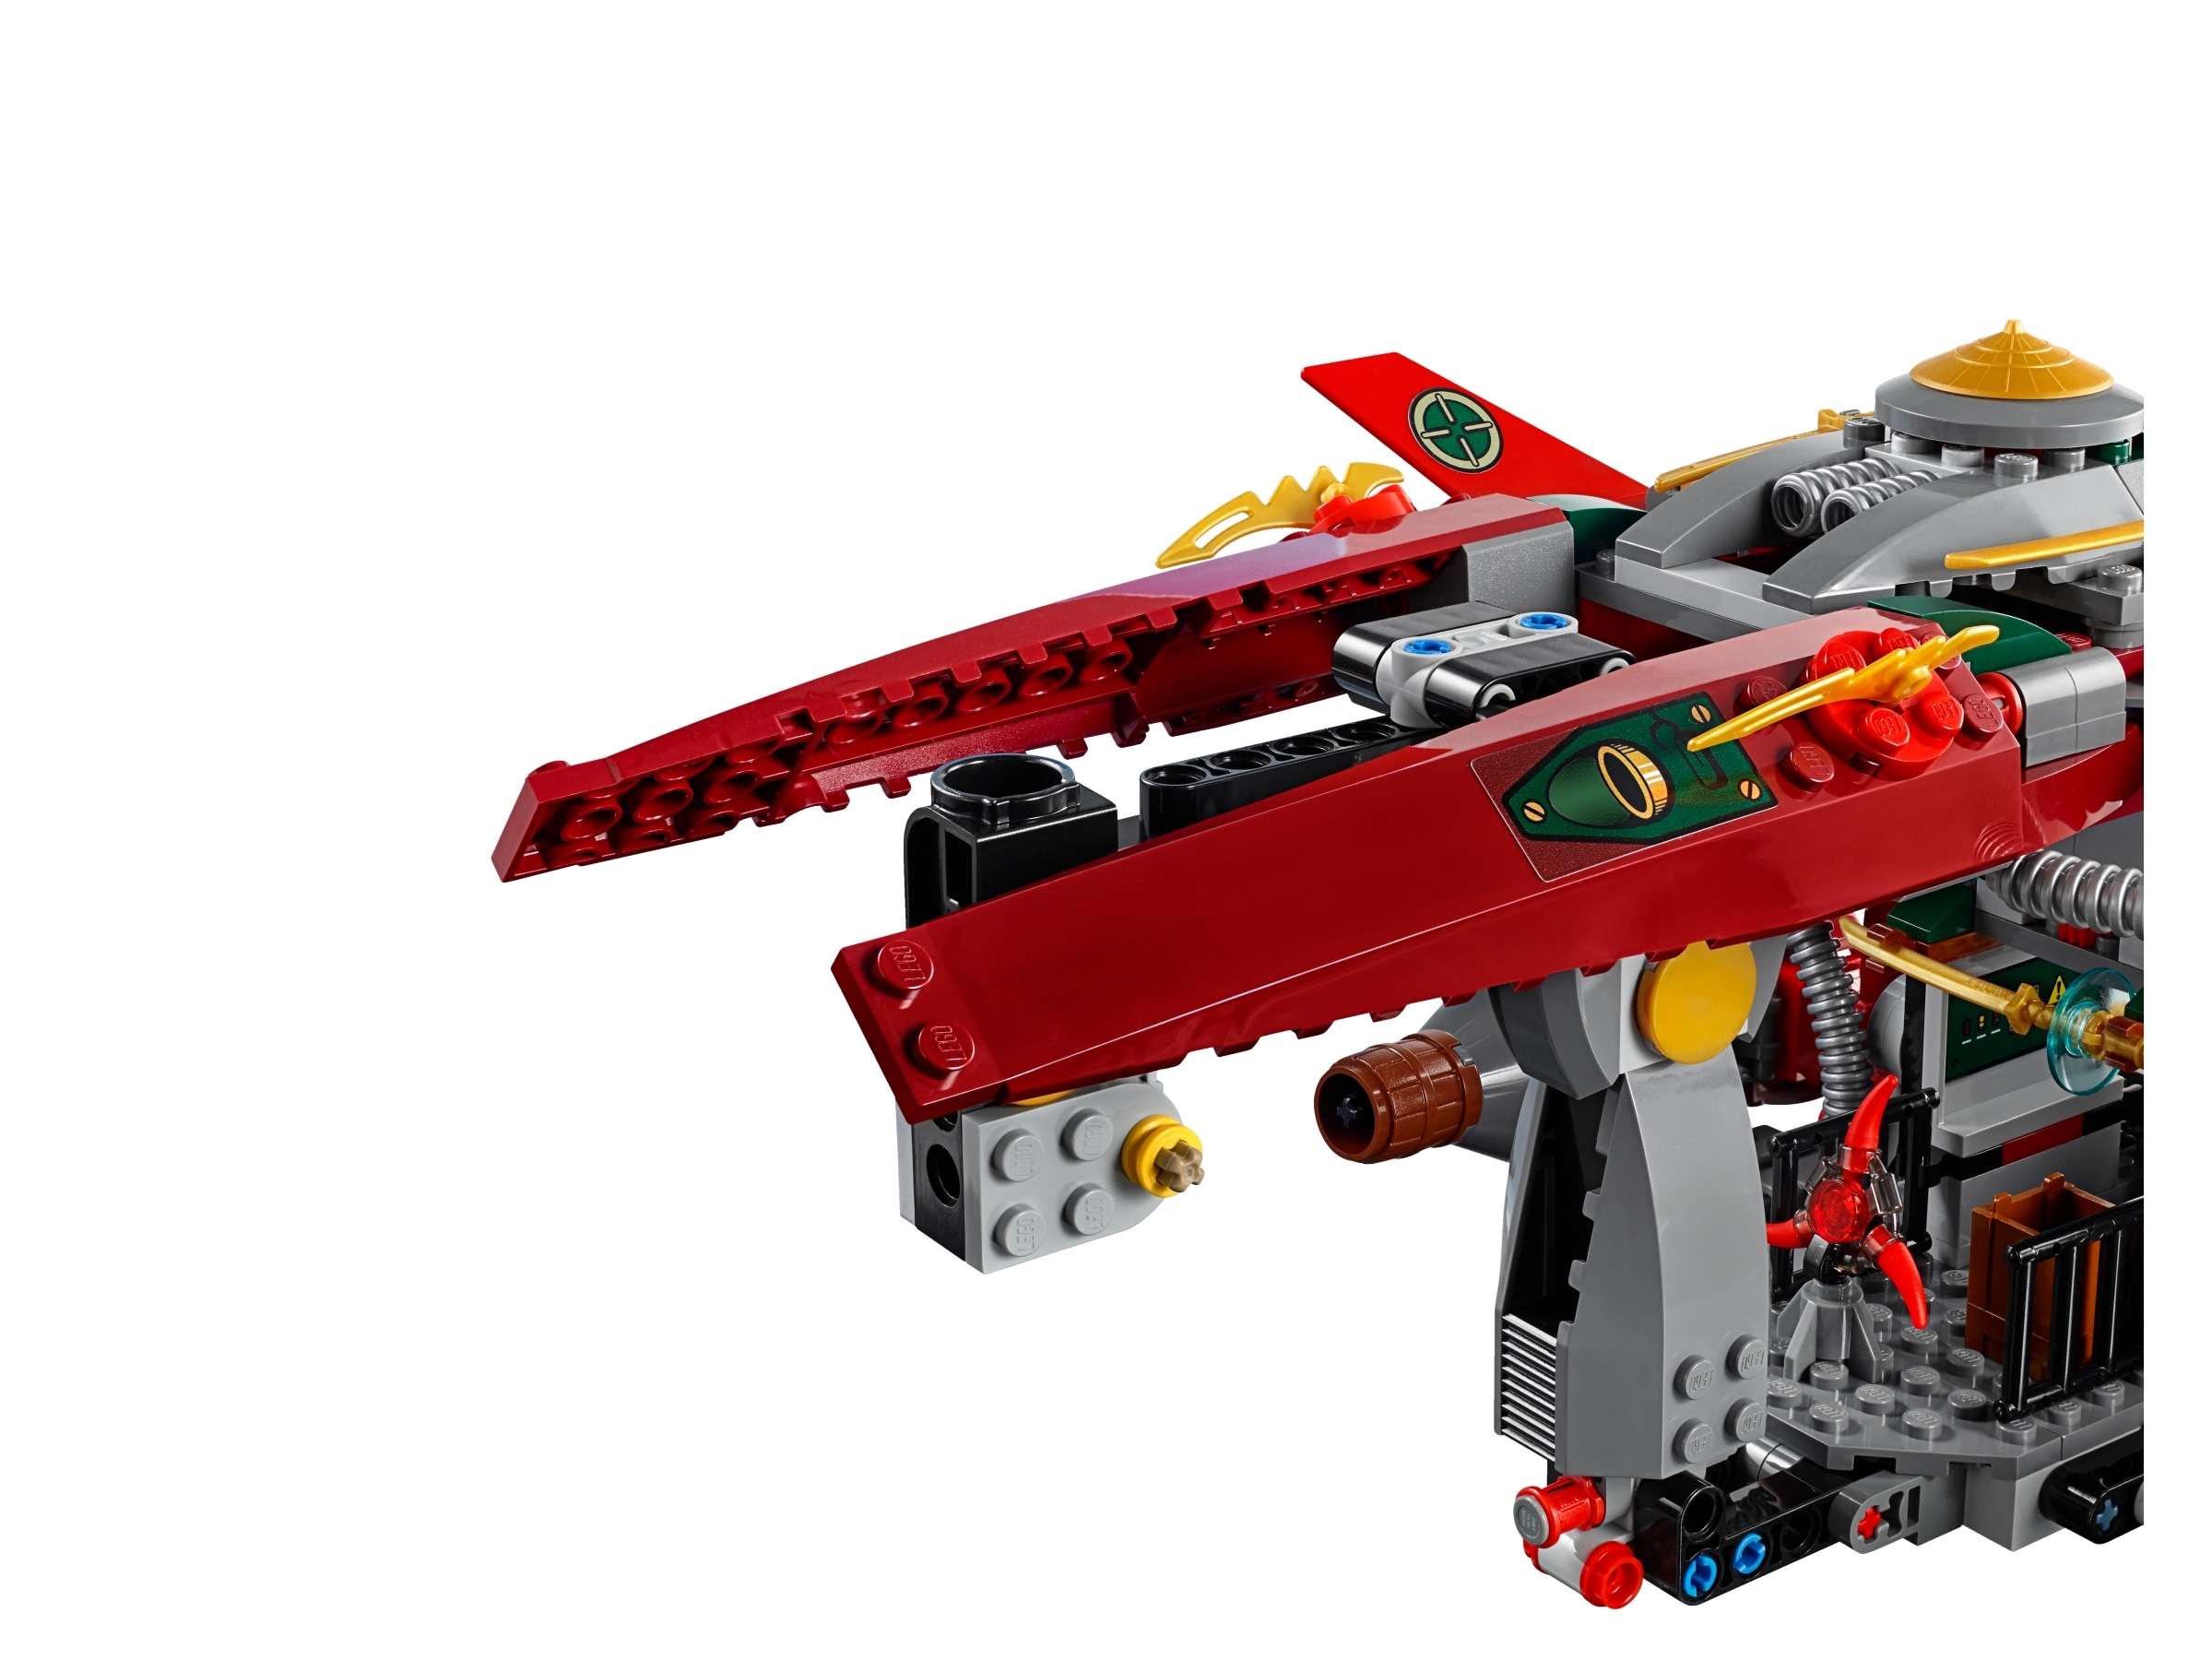 New Lego Ninjago Skreemer Figure from set 70735 